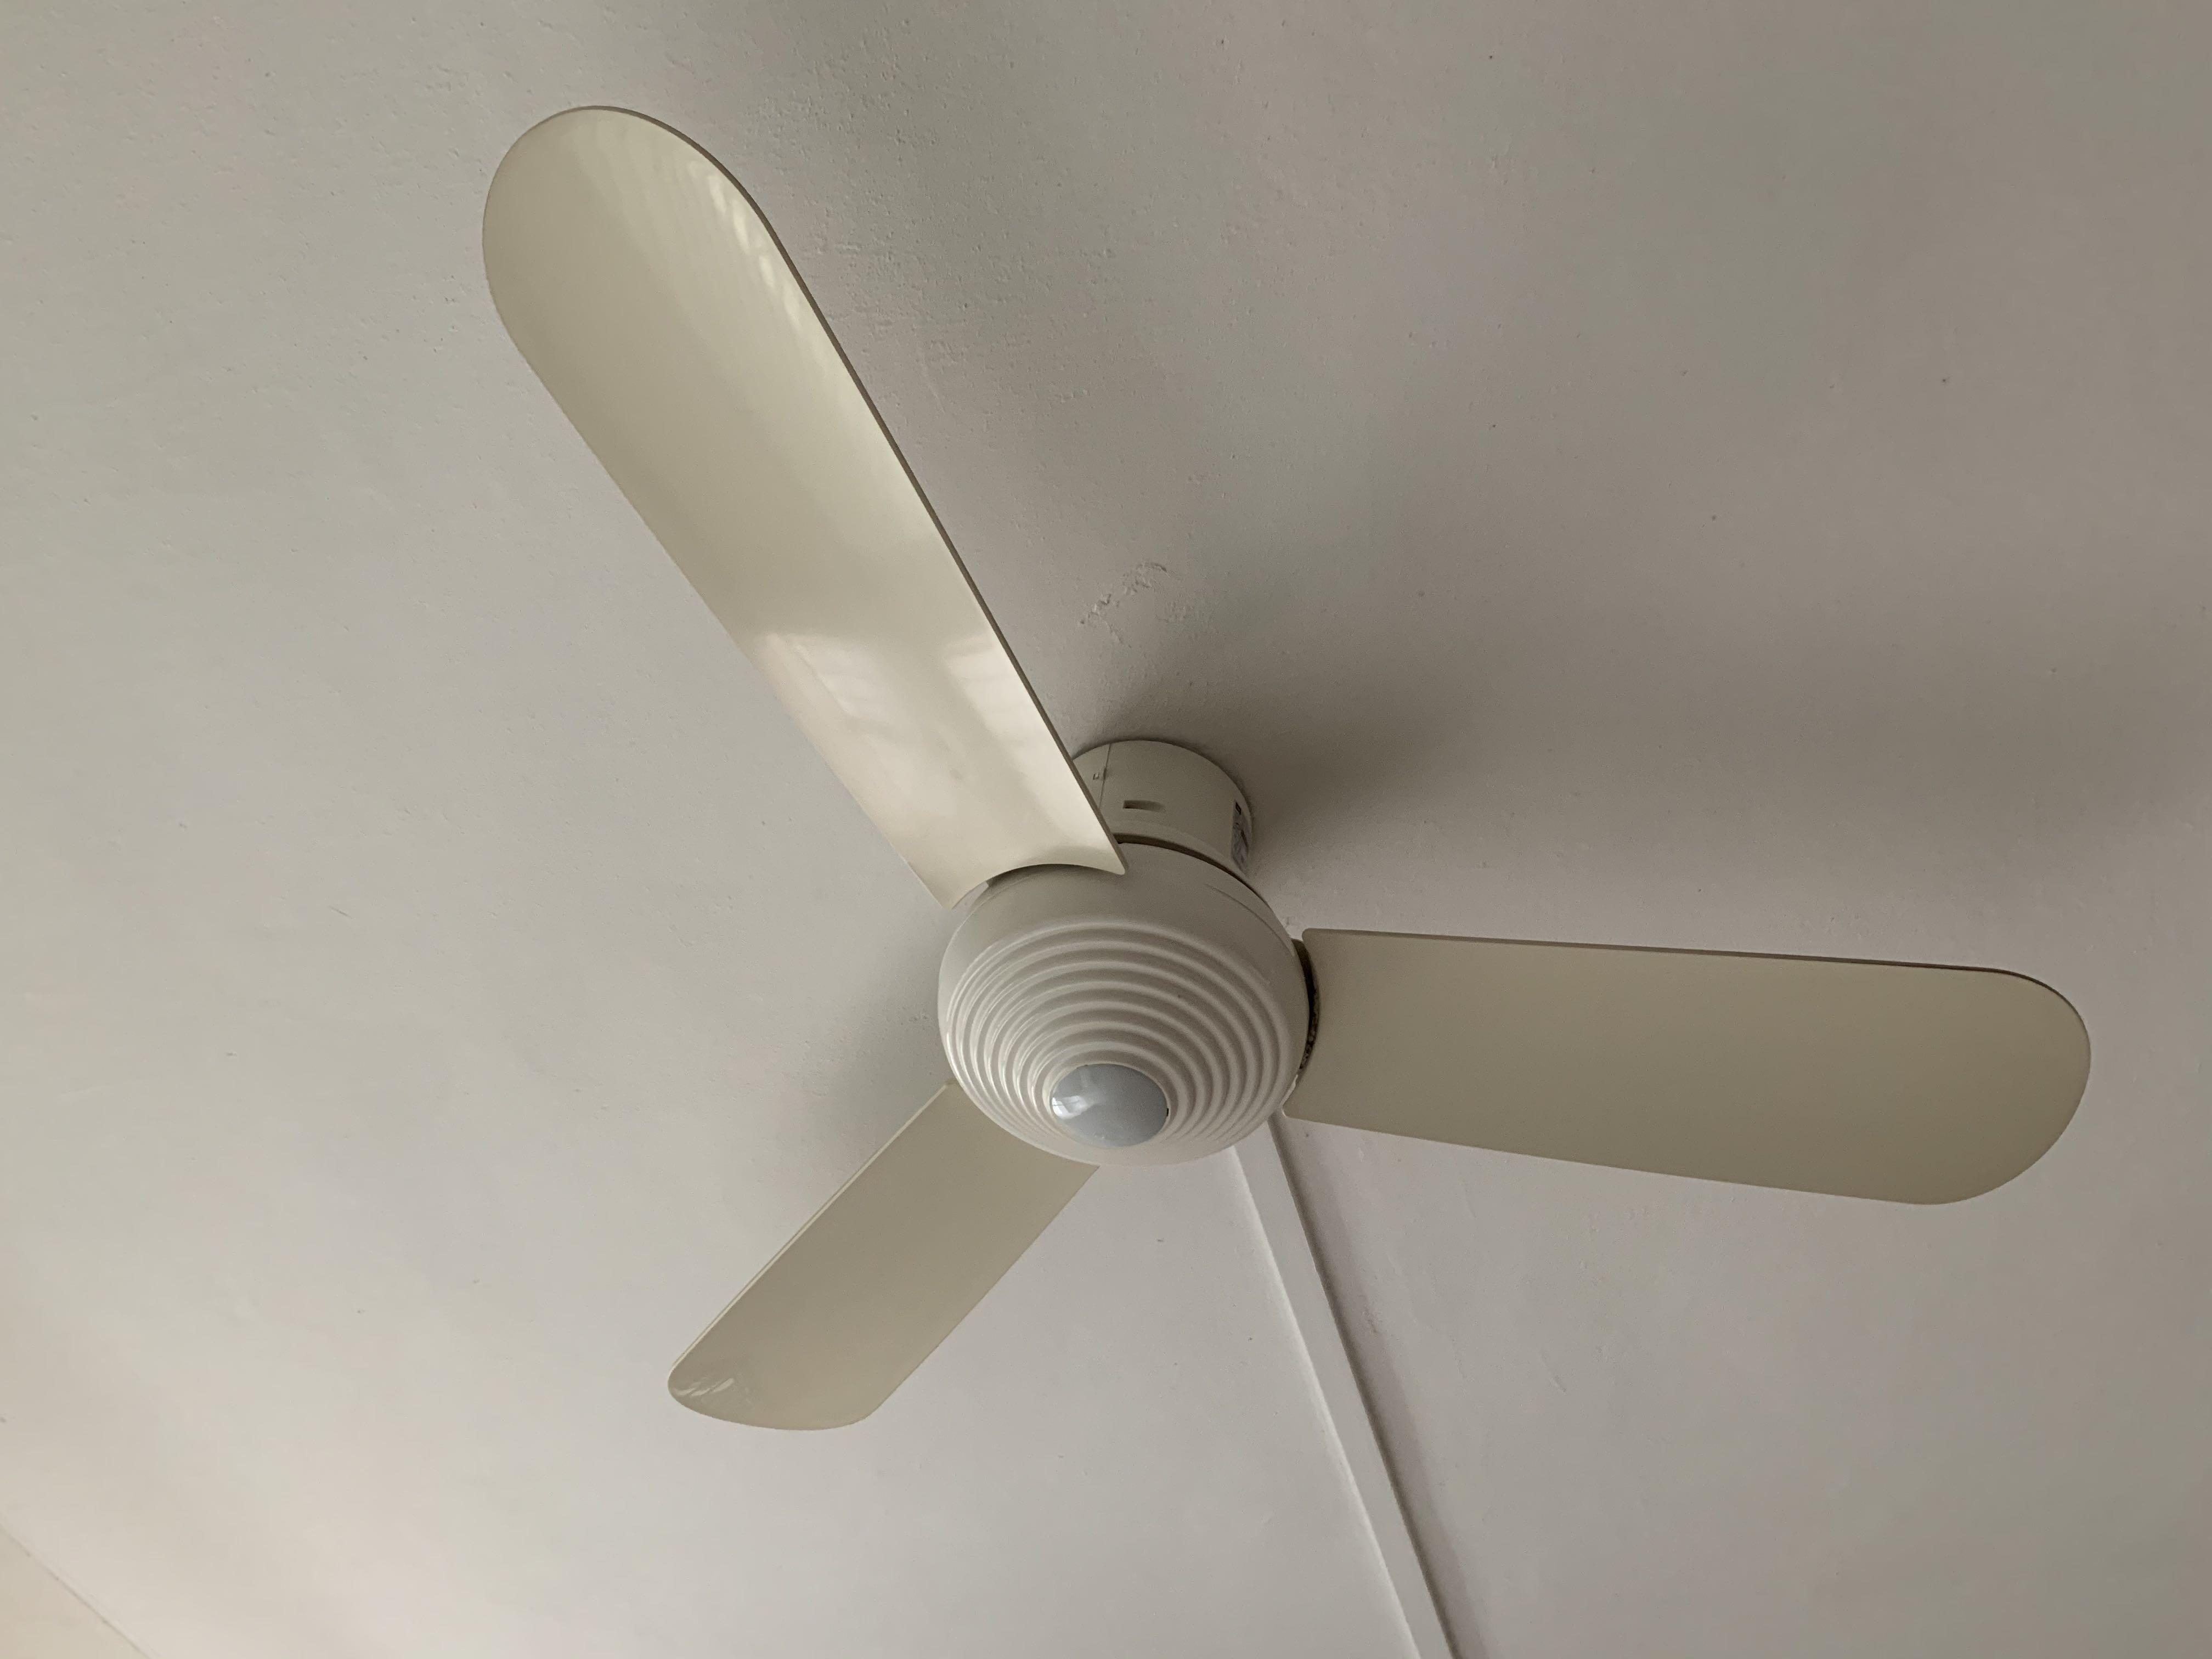 Kdk Ceiling Fan Used